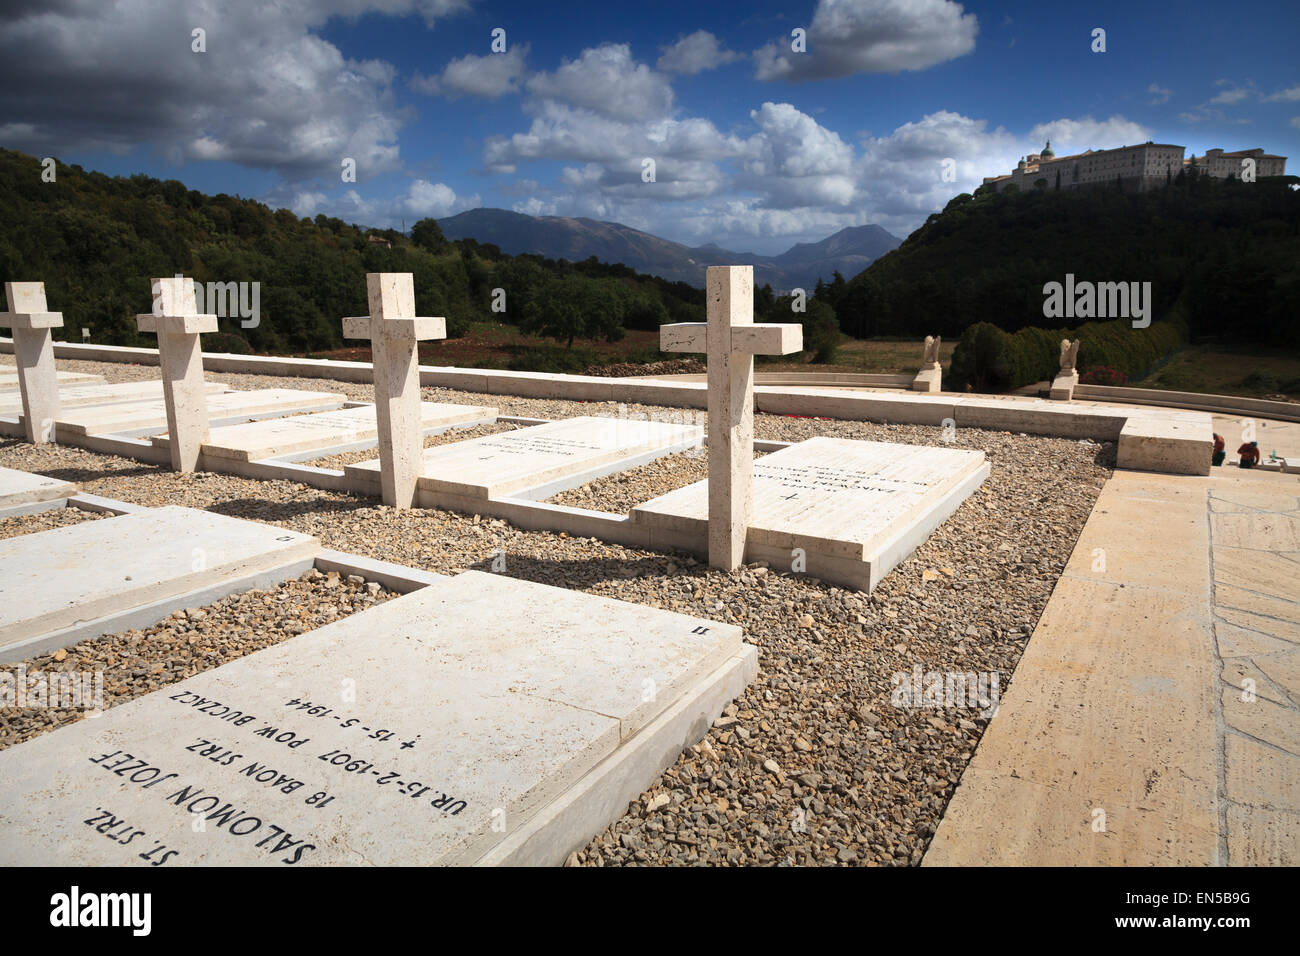 Les pierres tombales dans le cimetière polonais fier debout vers l'abbaye du Mont Cassin Banque D'Images